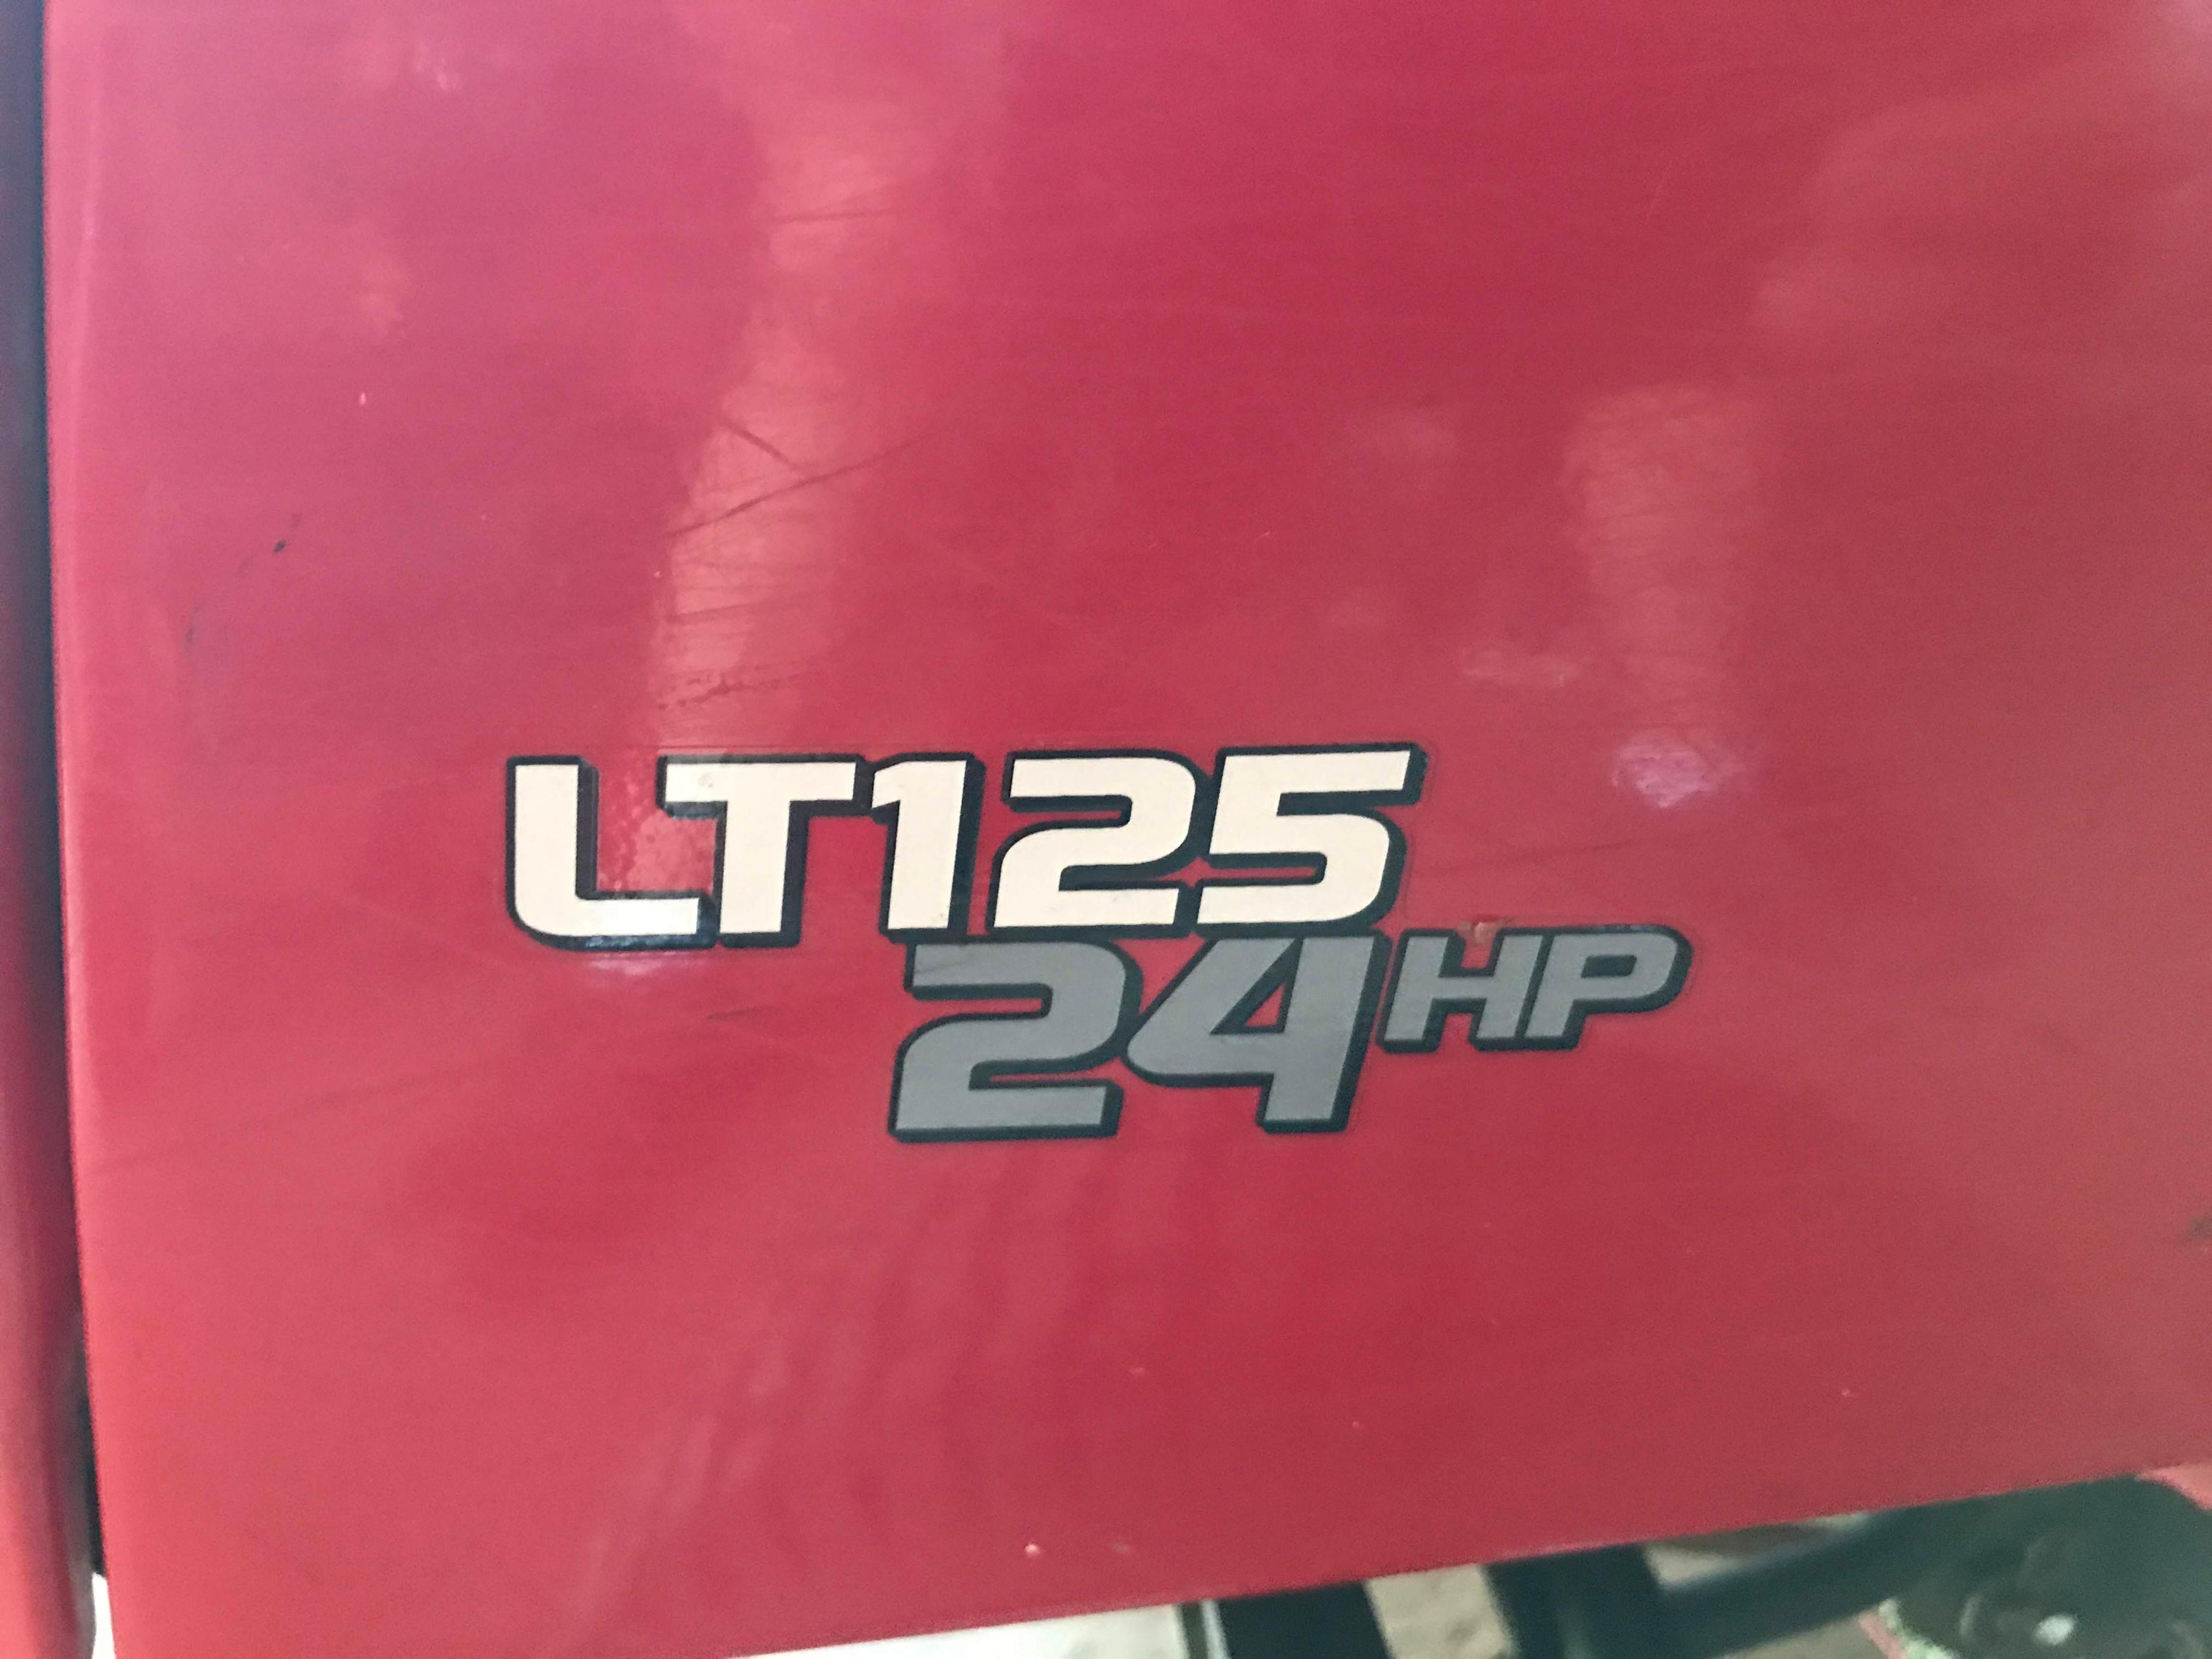 Snapper 46” Ride-on Lawnmower 24 Hp LT125